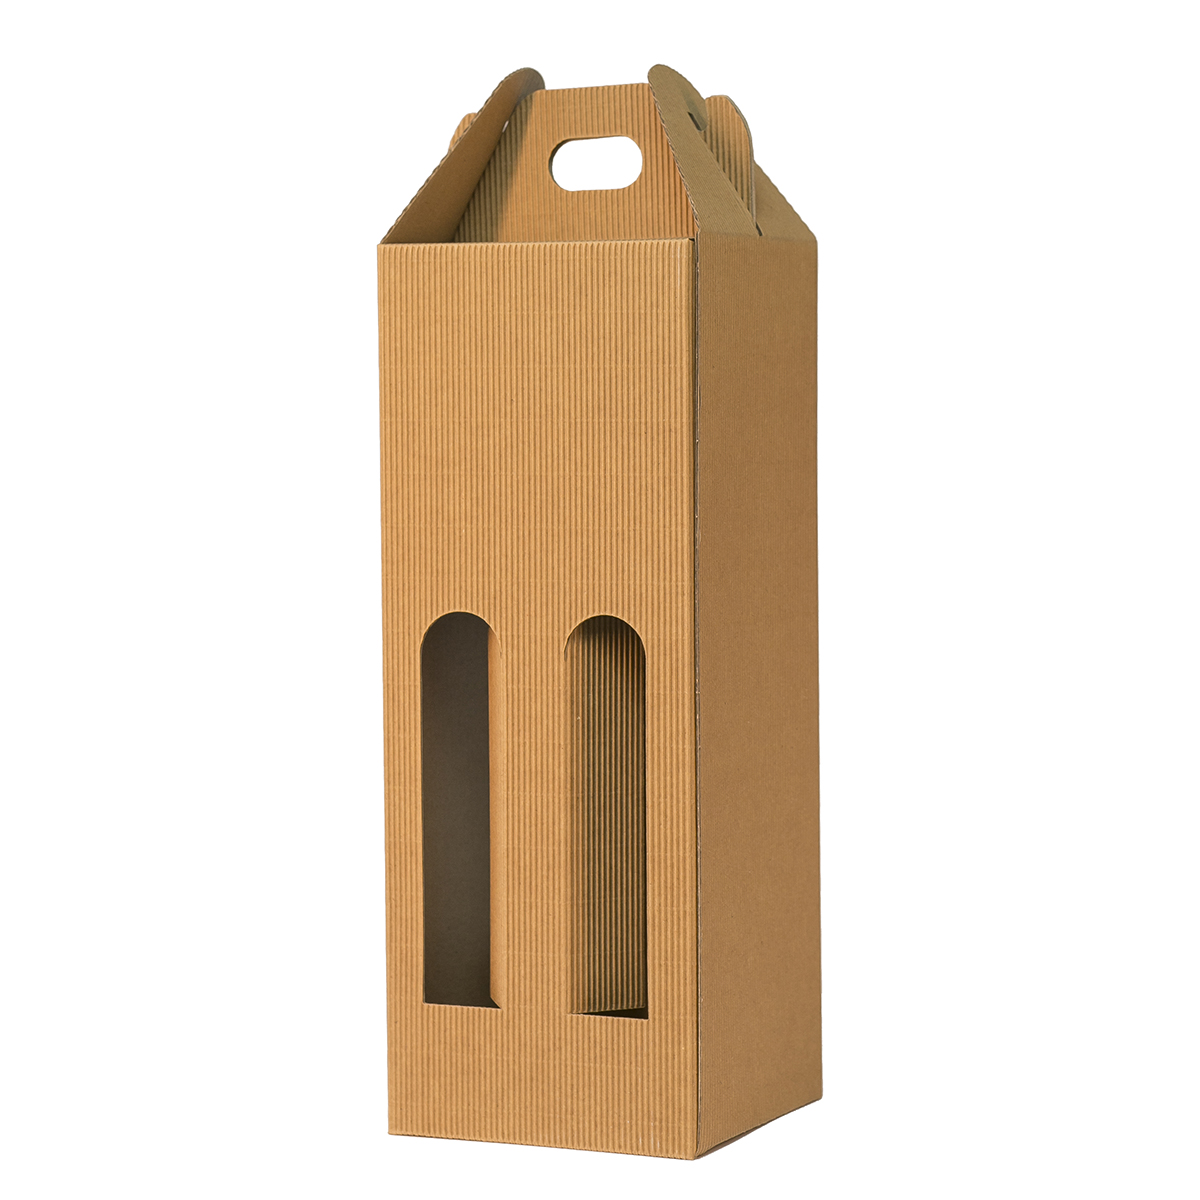 Pudełka Kartonowe na 4 butelki NALEWKI z uchwytem i oknami, 60/60/335 mm, 4-warstwowy prążkowany brąz, nr 484 4W